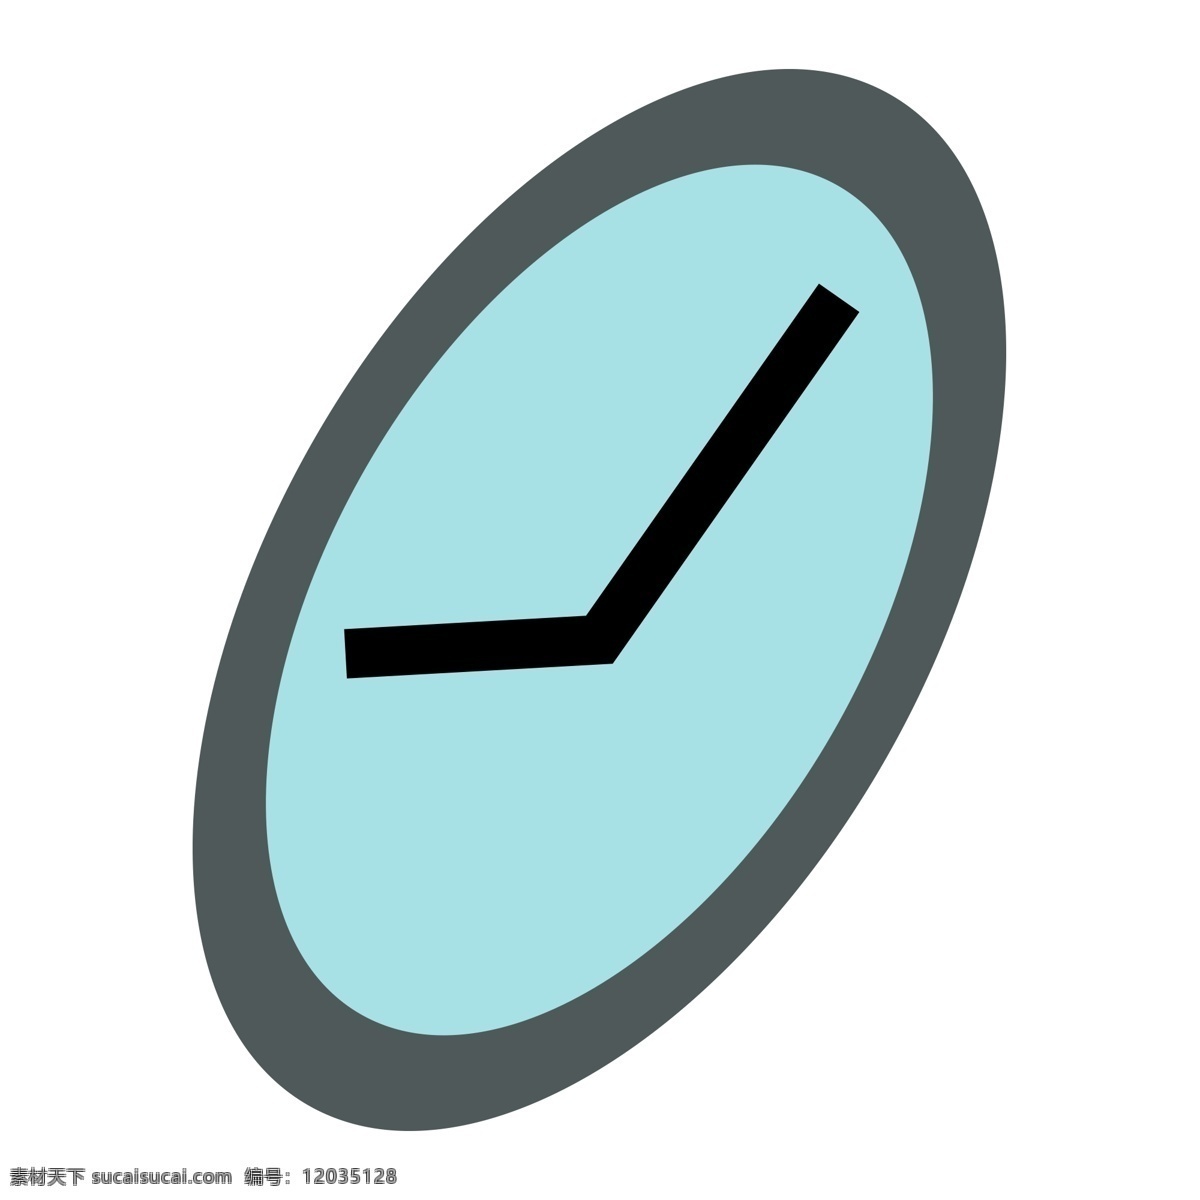 一个 圆形 蓝色 卡通 时钟 九 点 十 五 分 的卡 通 水蓝色时钟 免抠时钟图